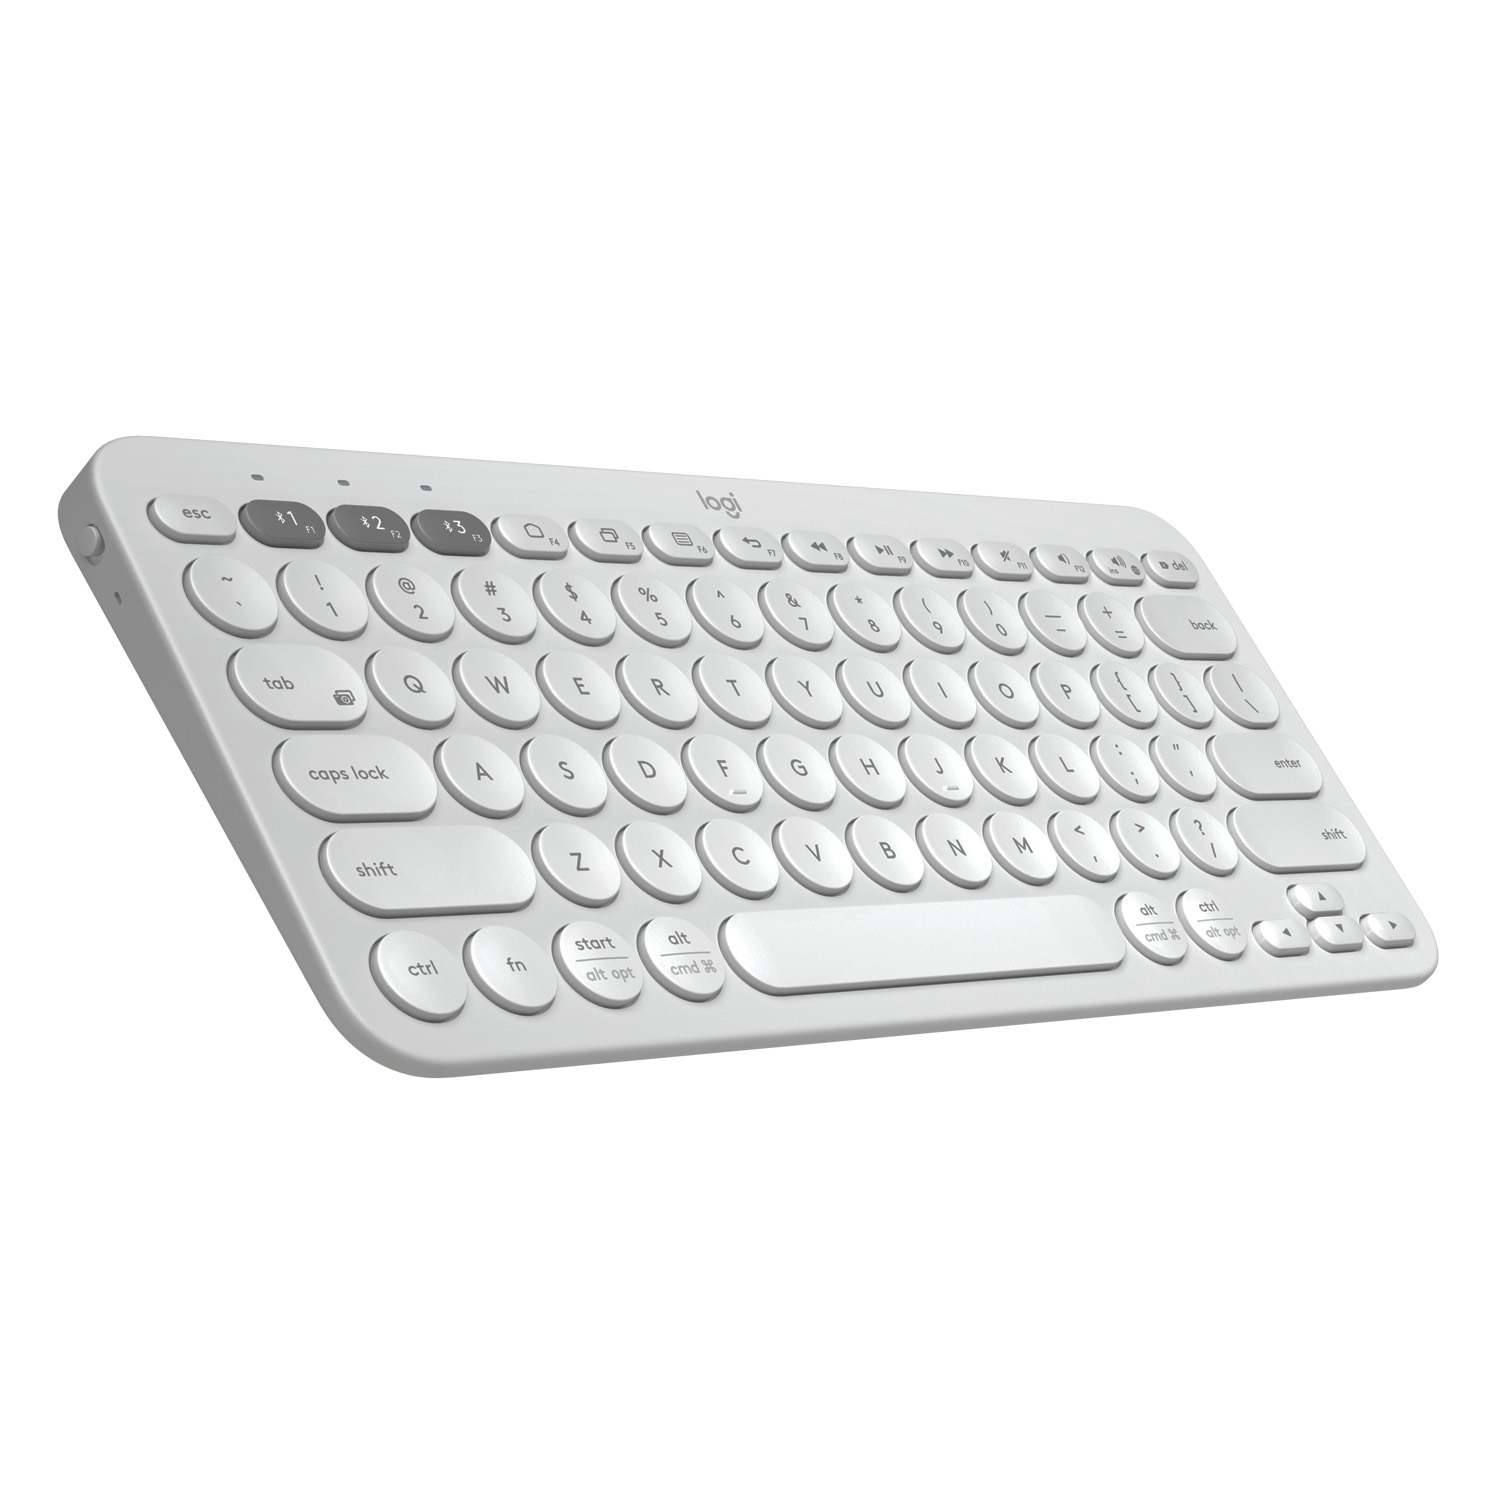 Logitech K380 Multi-Device Bluetooth&#174; Keyboard